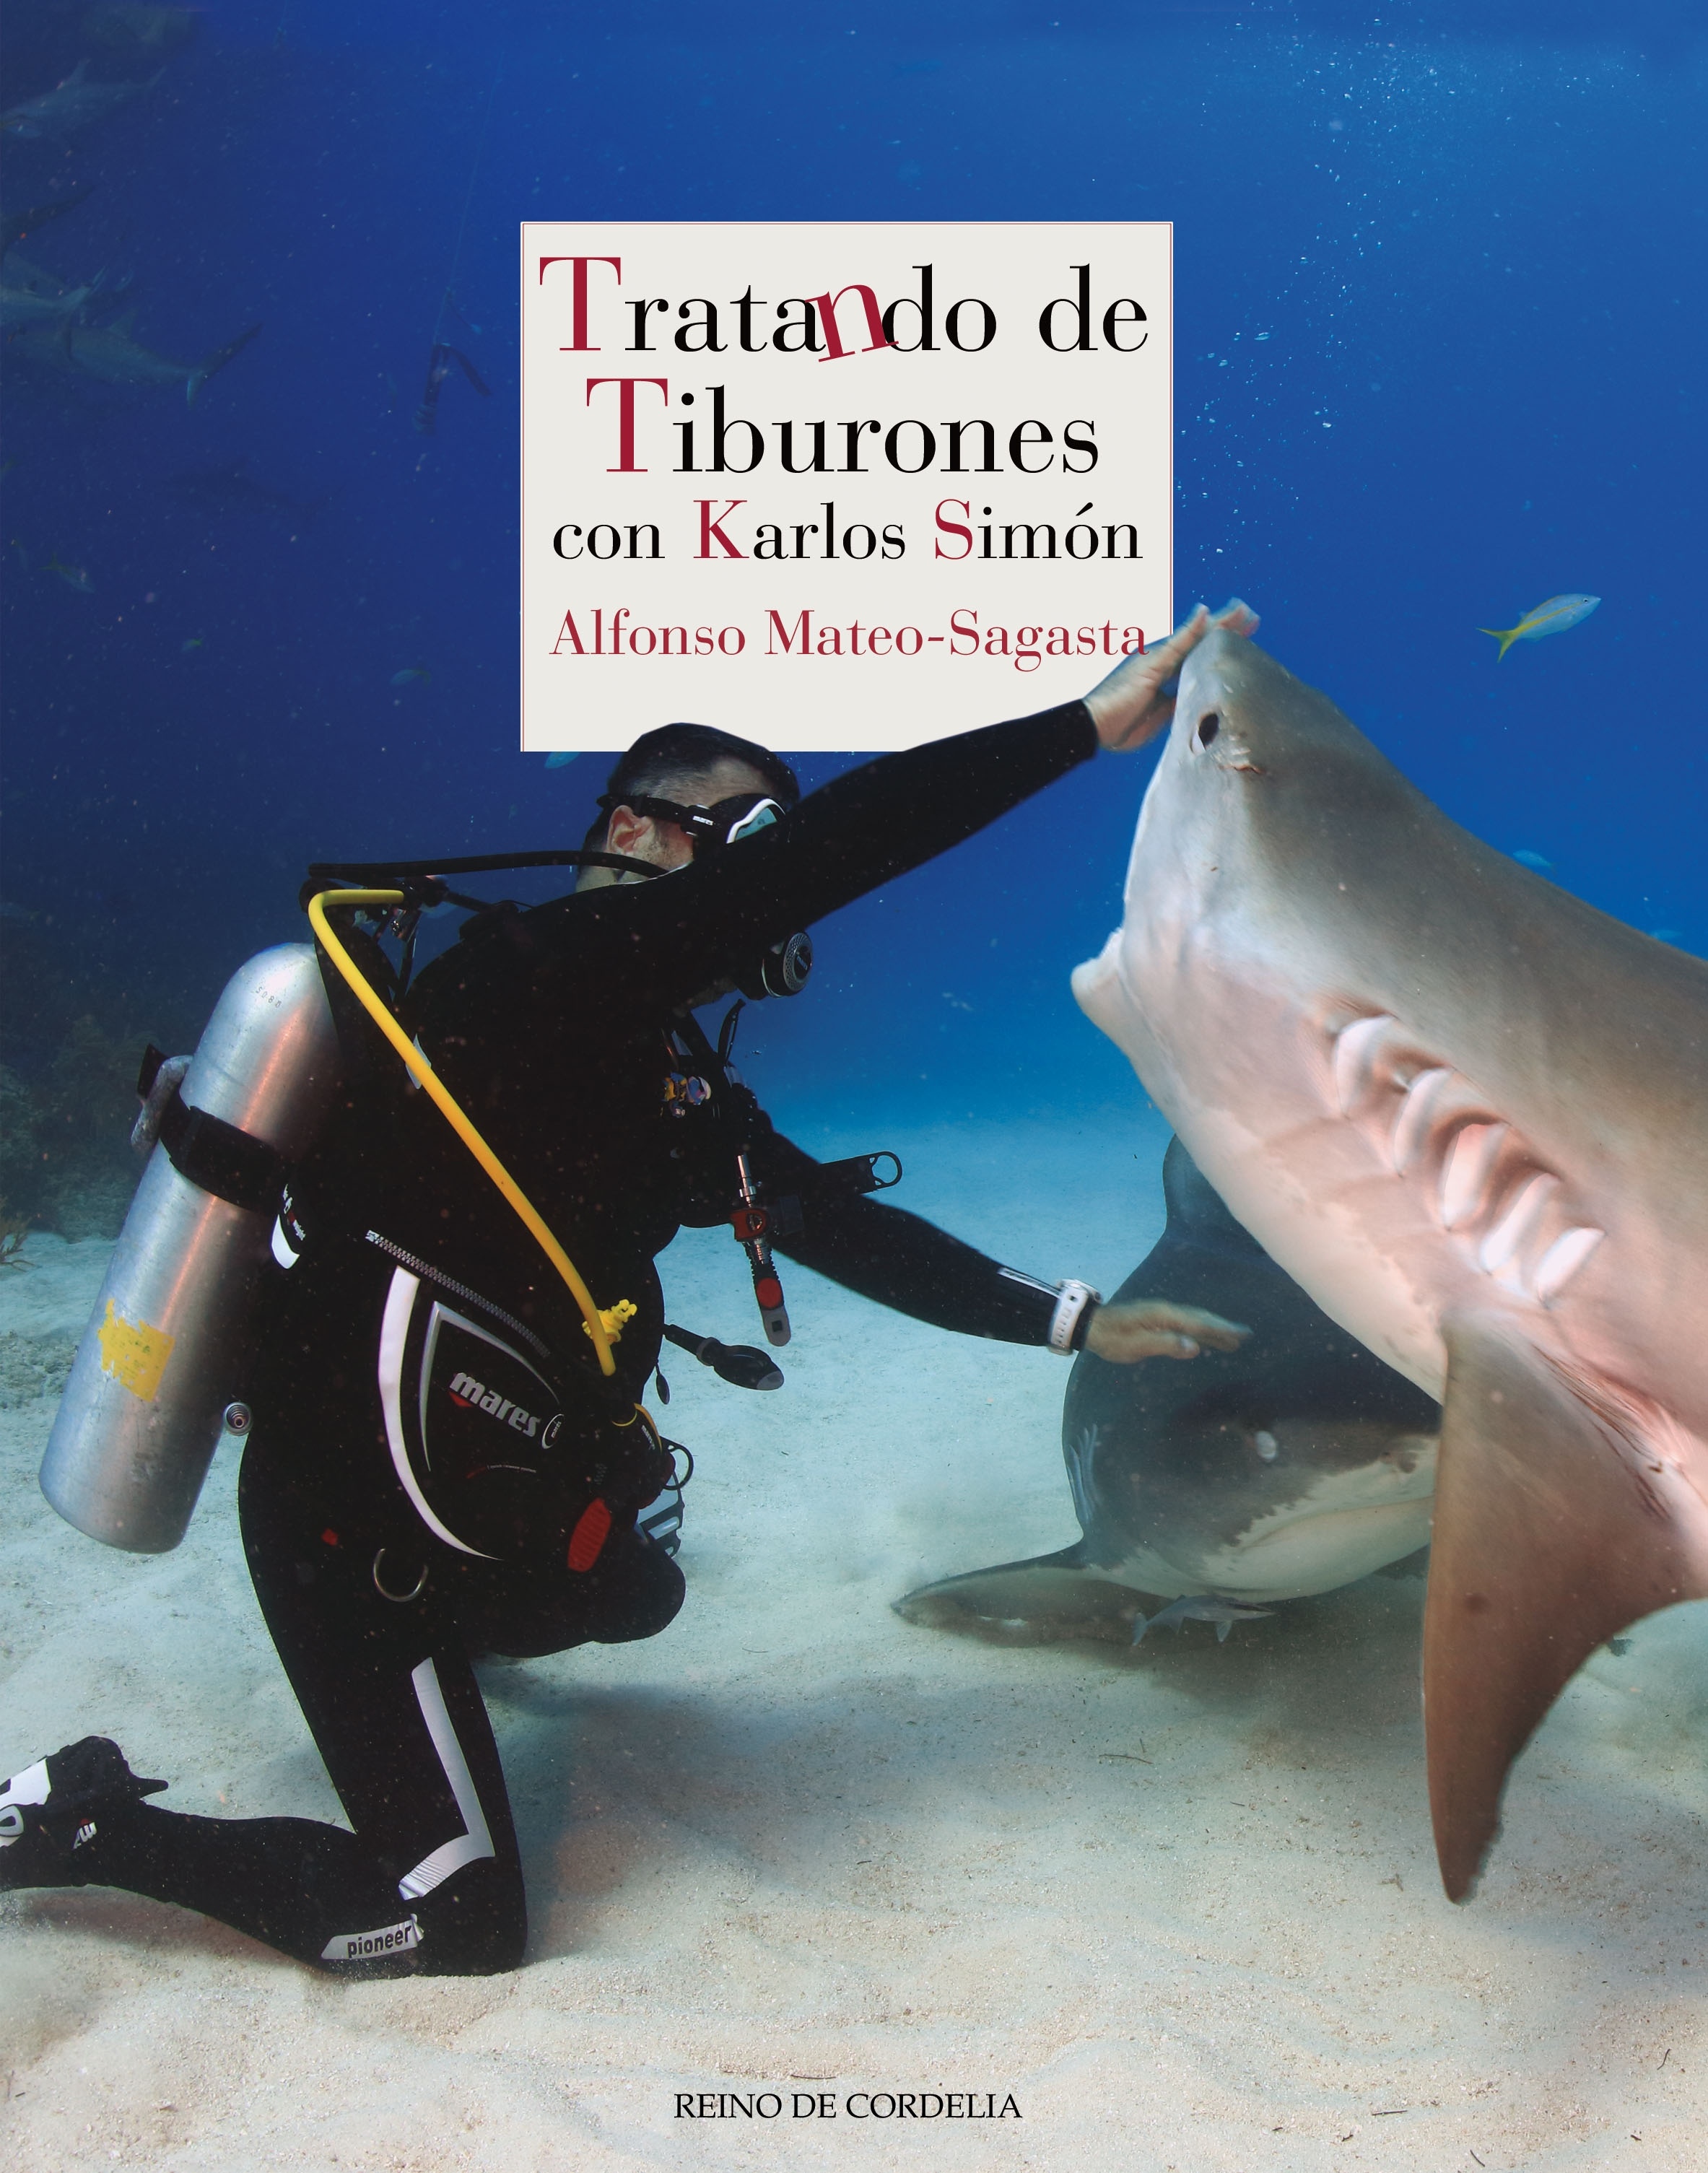 Tratando de tiburones "con Karlos Simón"